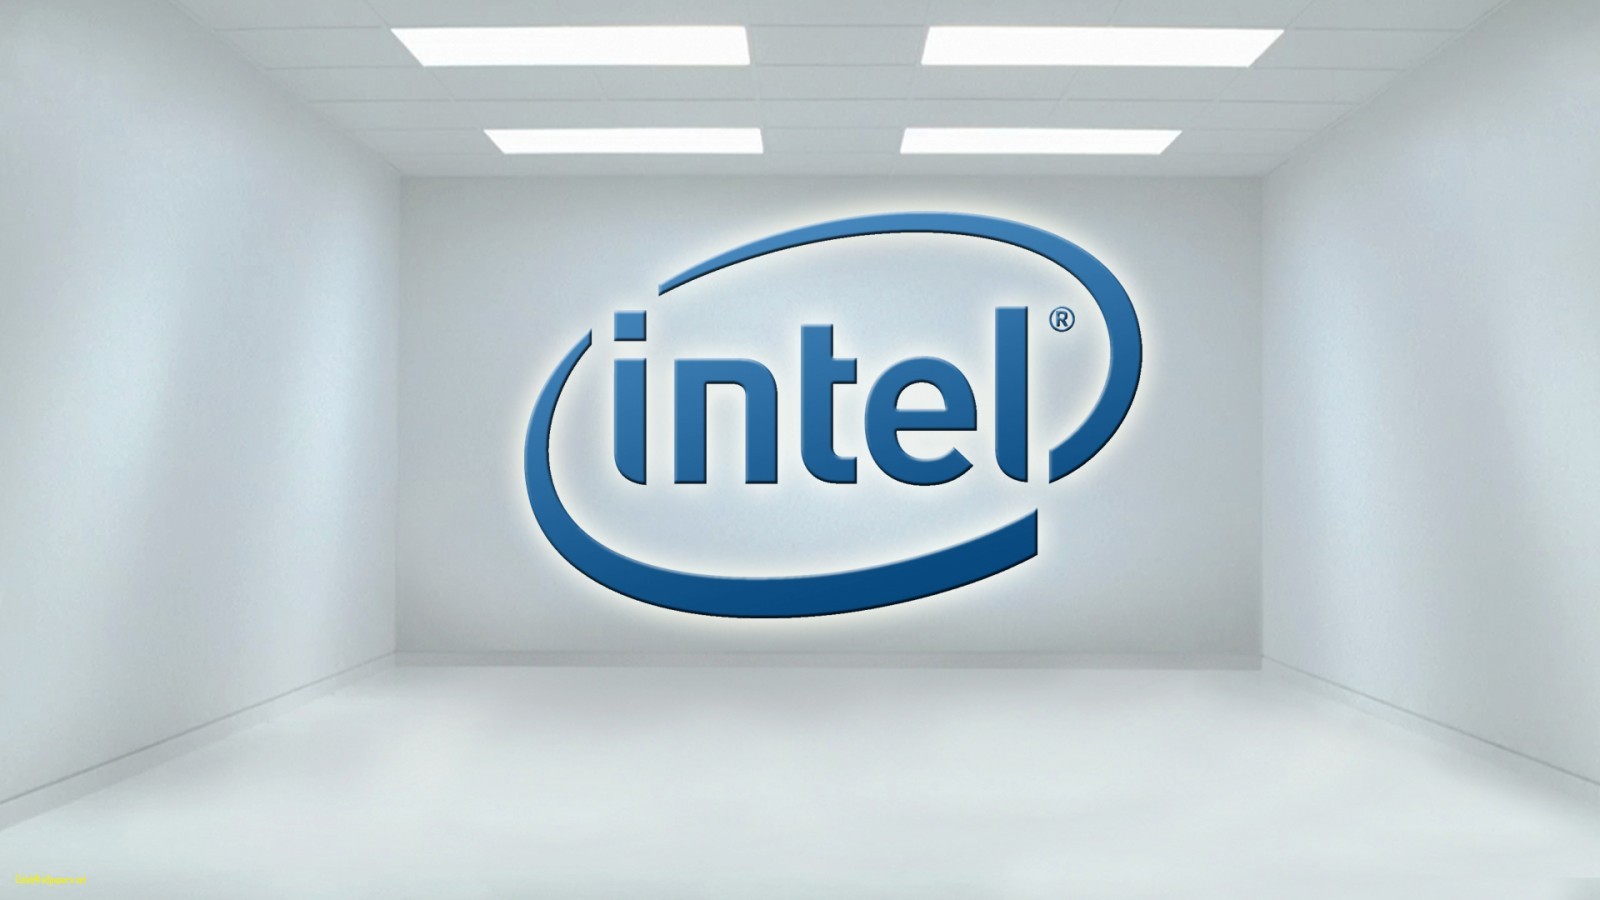 Procesor rocznicowy Intela osiągnie 5 GHz